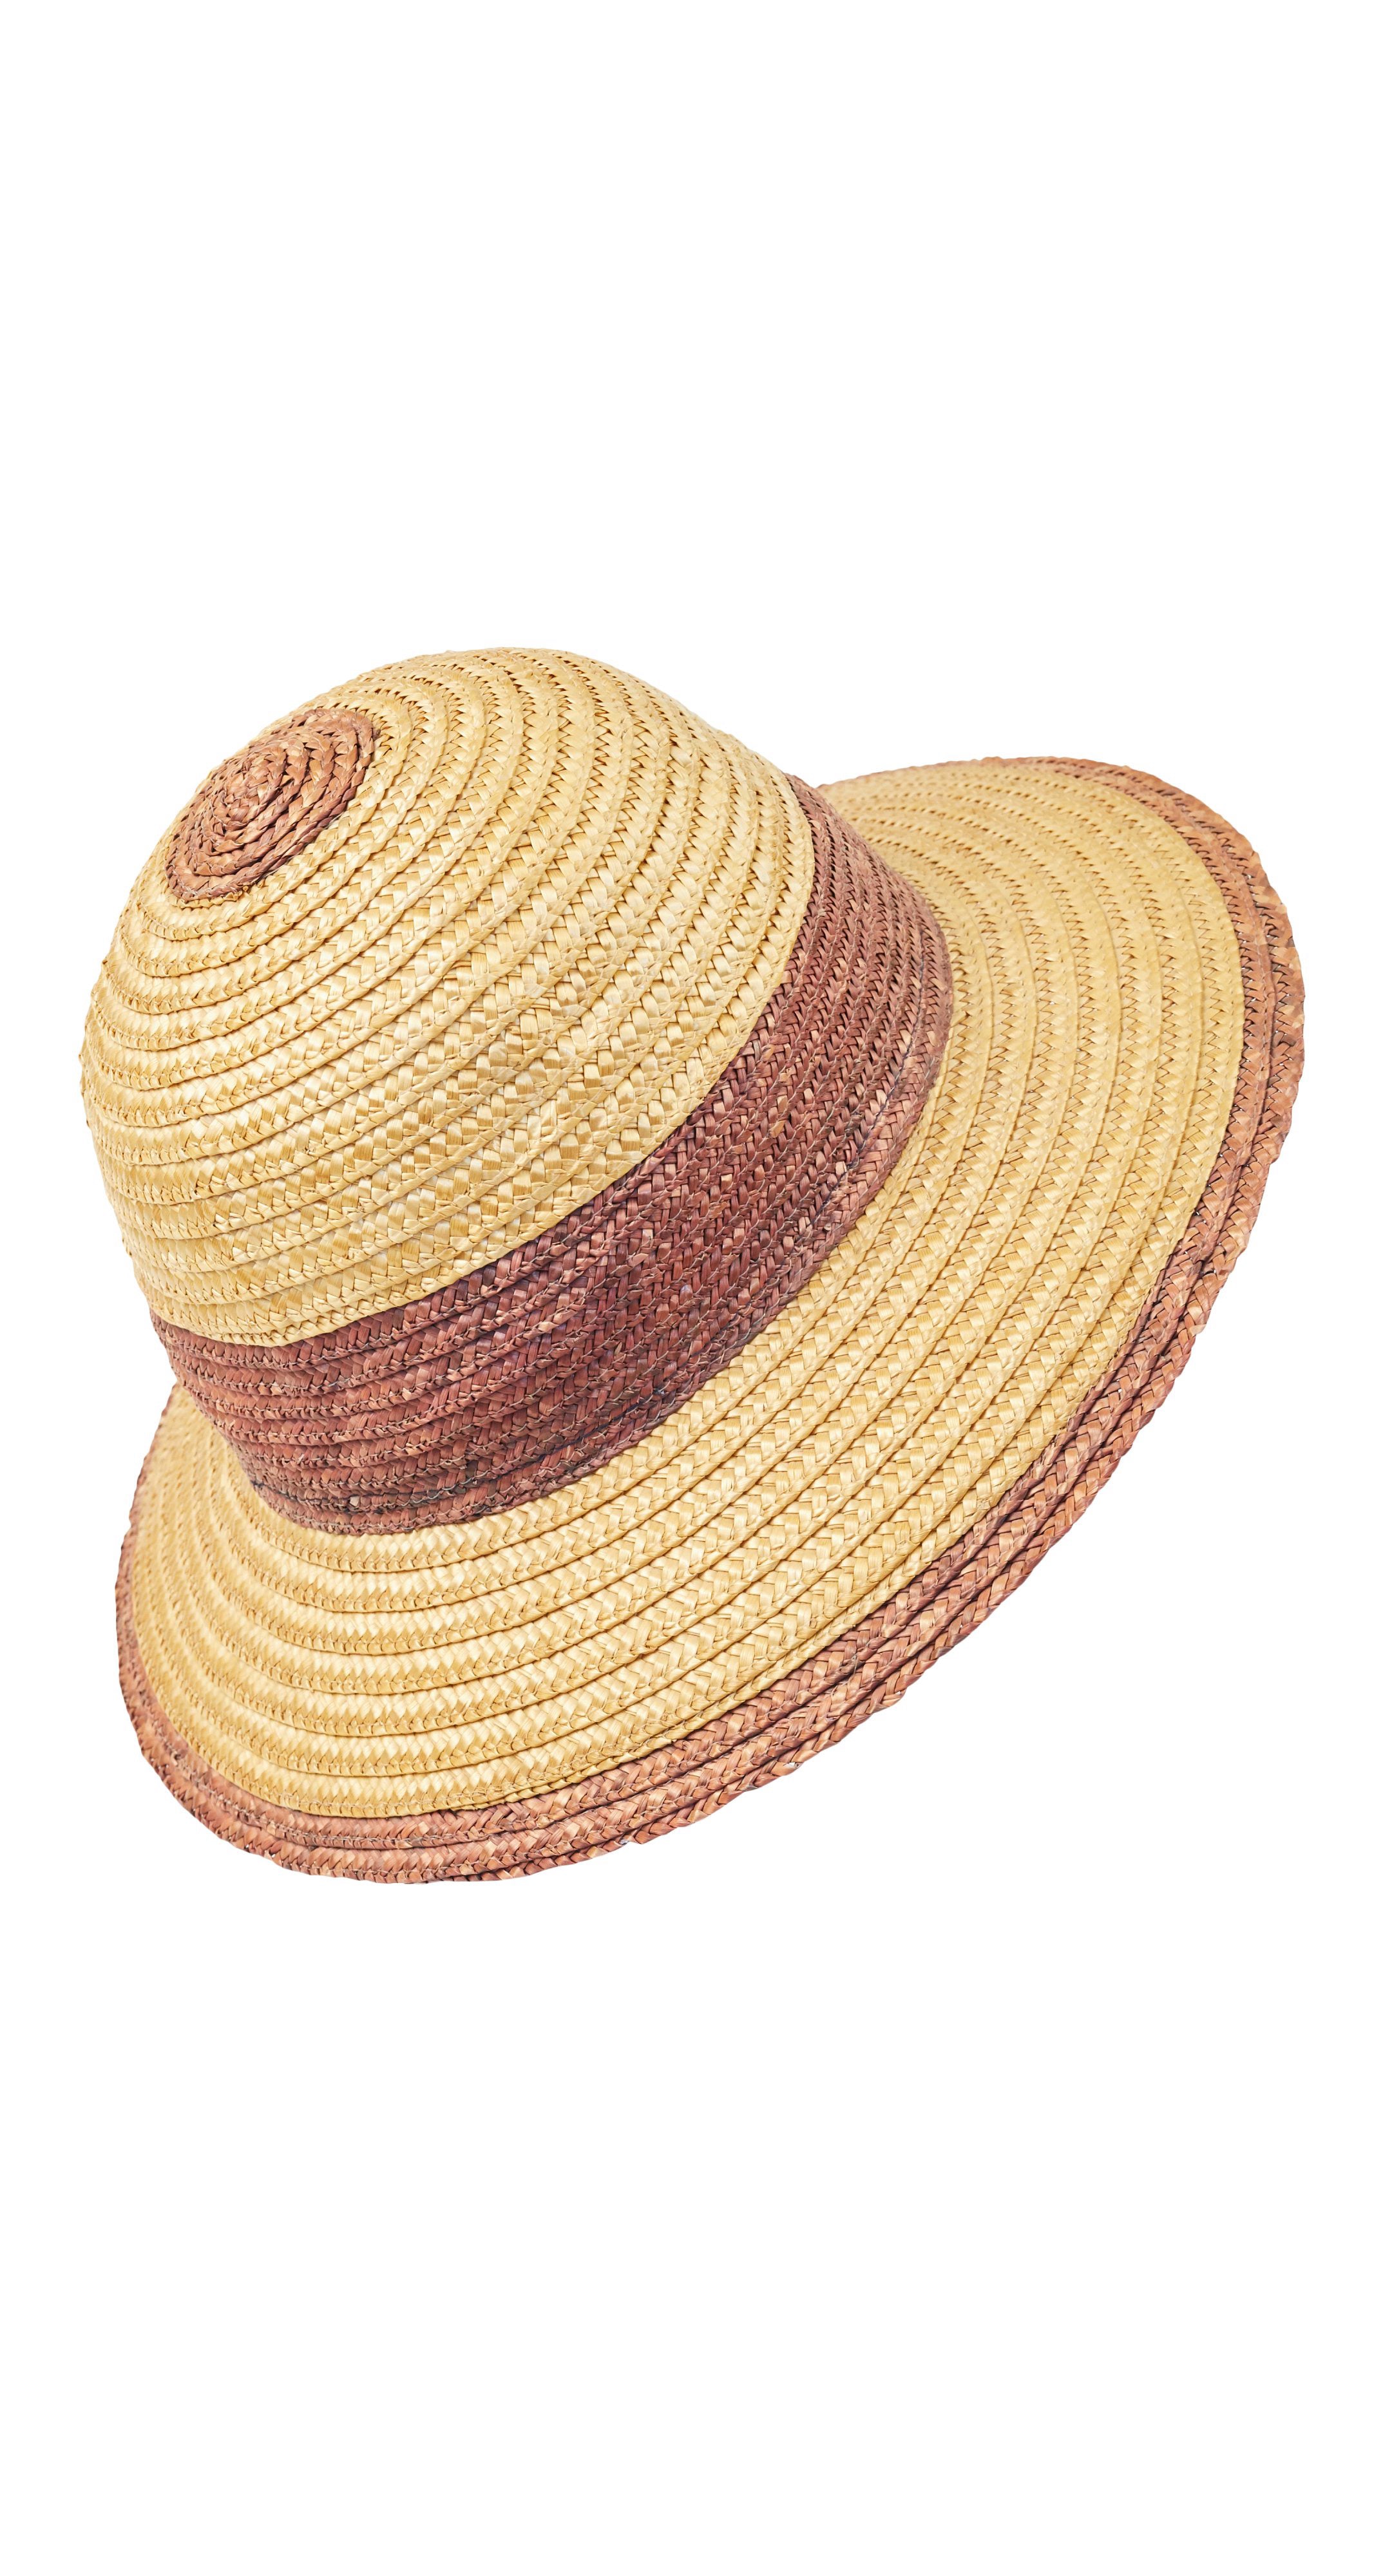 1970s Safari-Style Straw Sun Hat